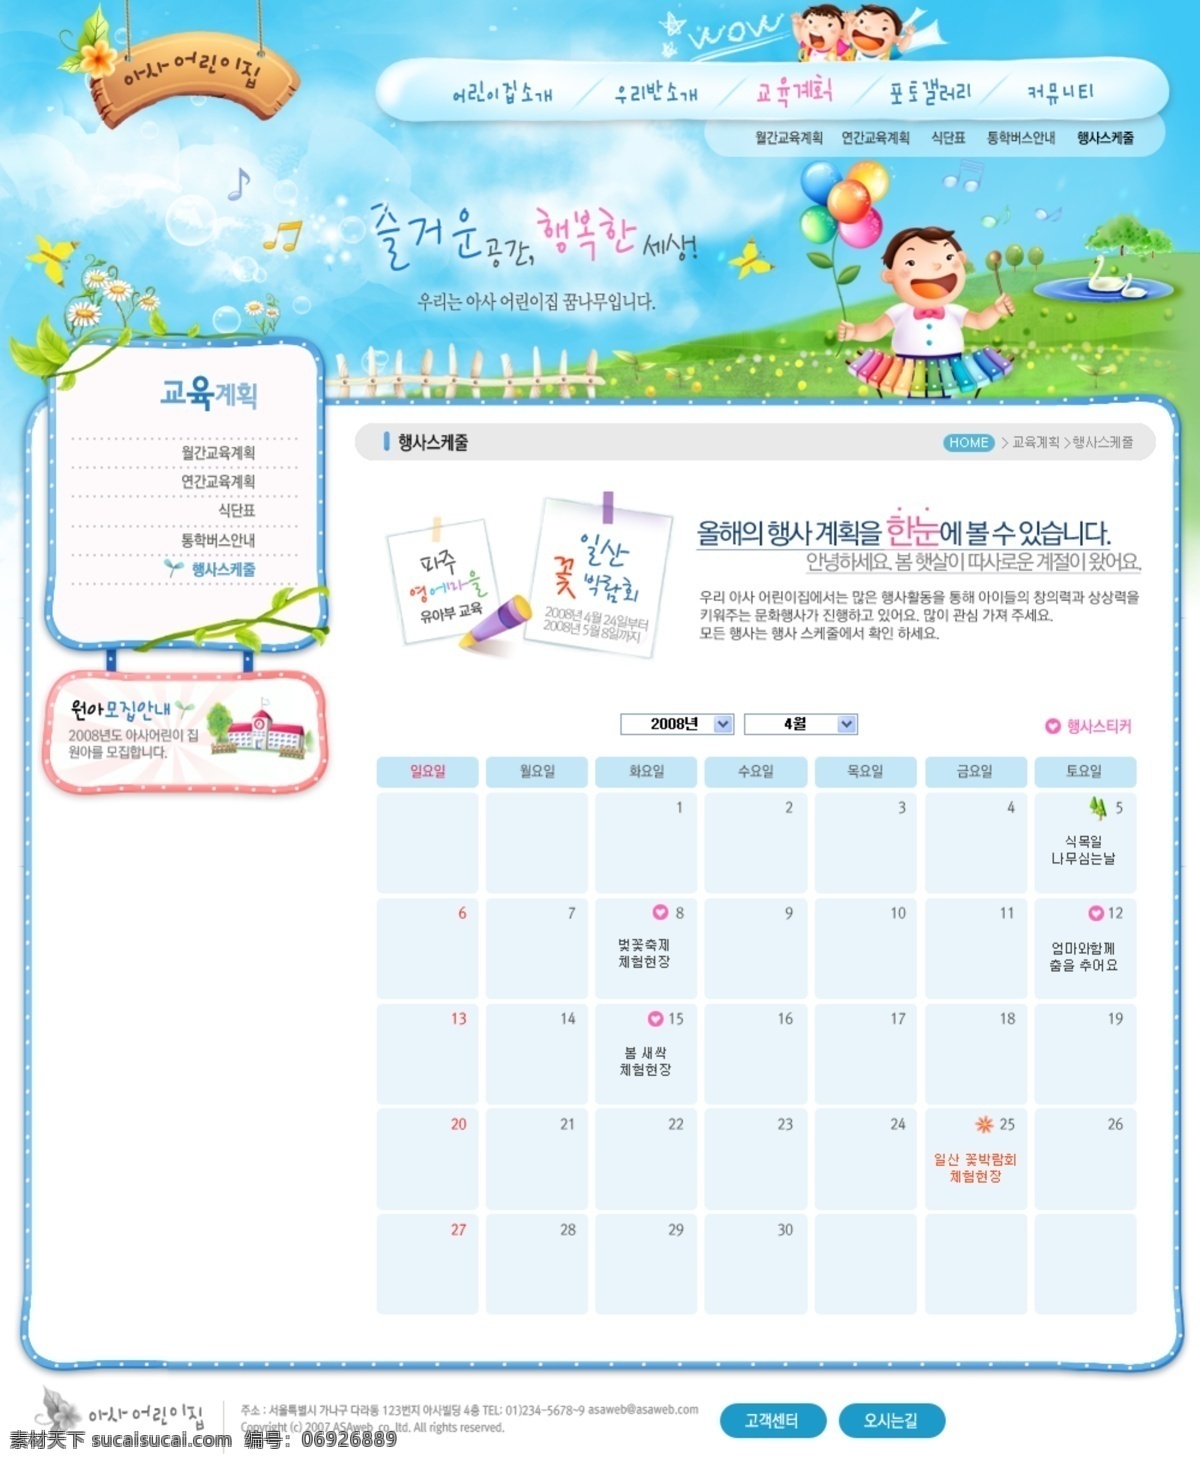 韩国 蓝色天空 卡通 幼儿园 网页模板 导航 儿童 儿童网站 韩国模板 卡通人物 卡通网页模板 卡通字母 网页内页 幼儿园网站 源文件 网页素材